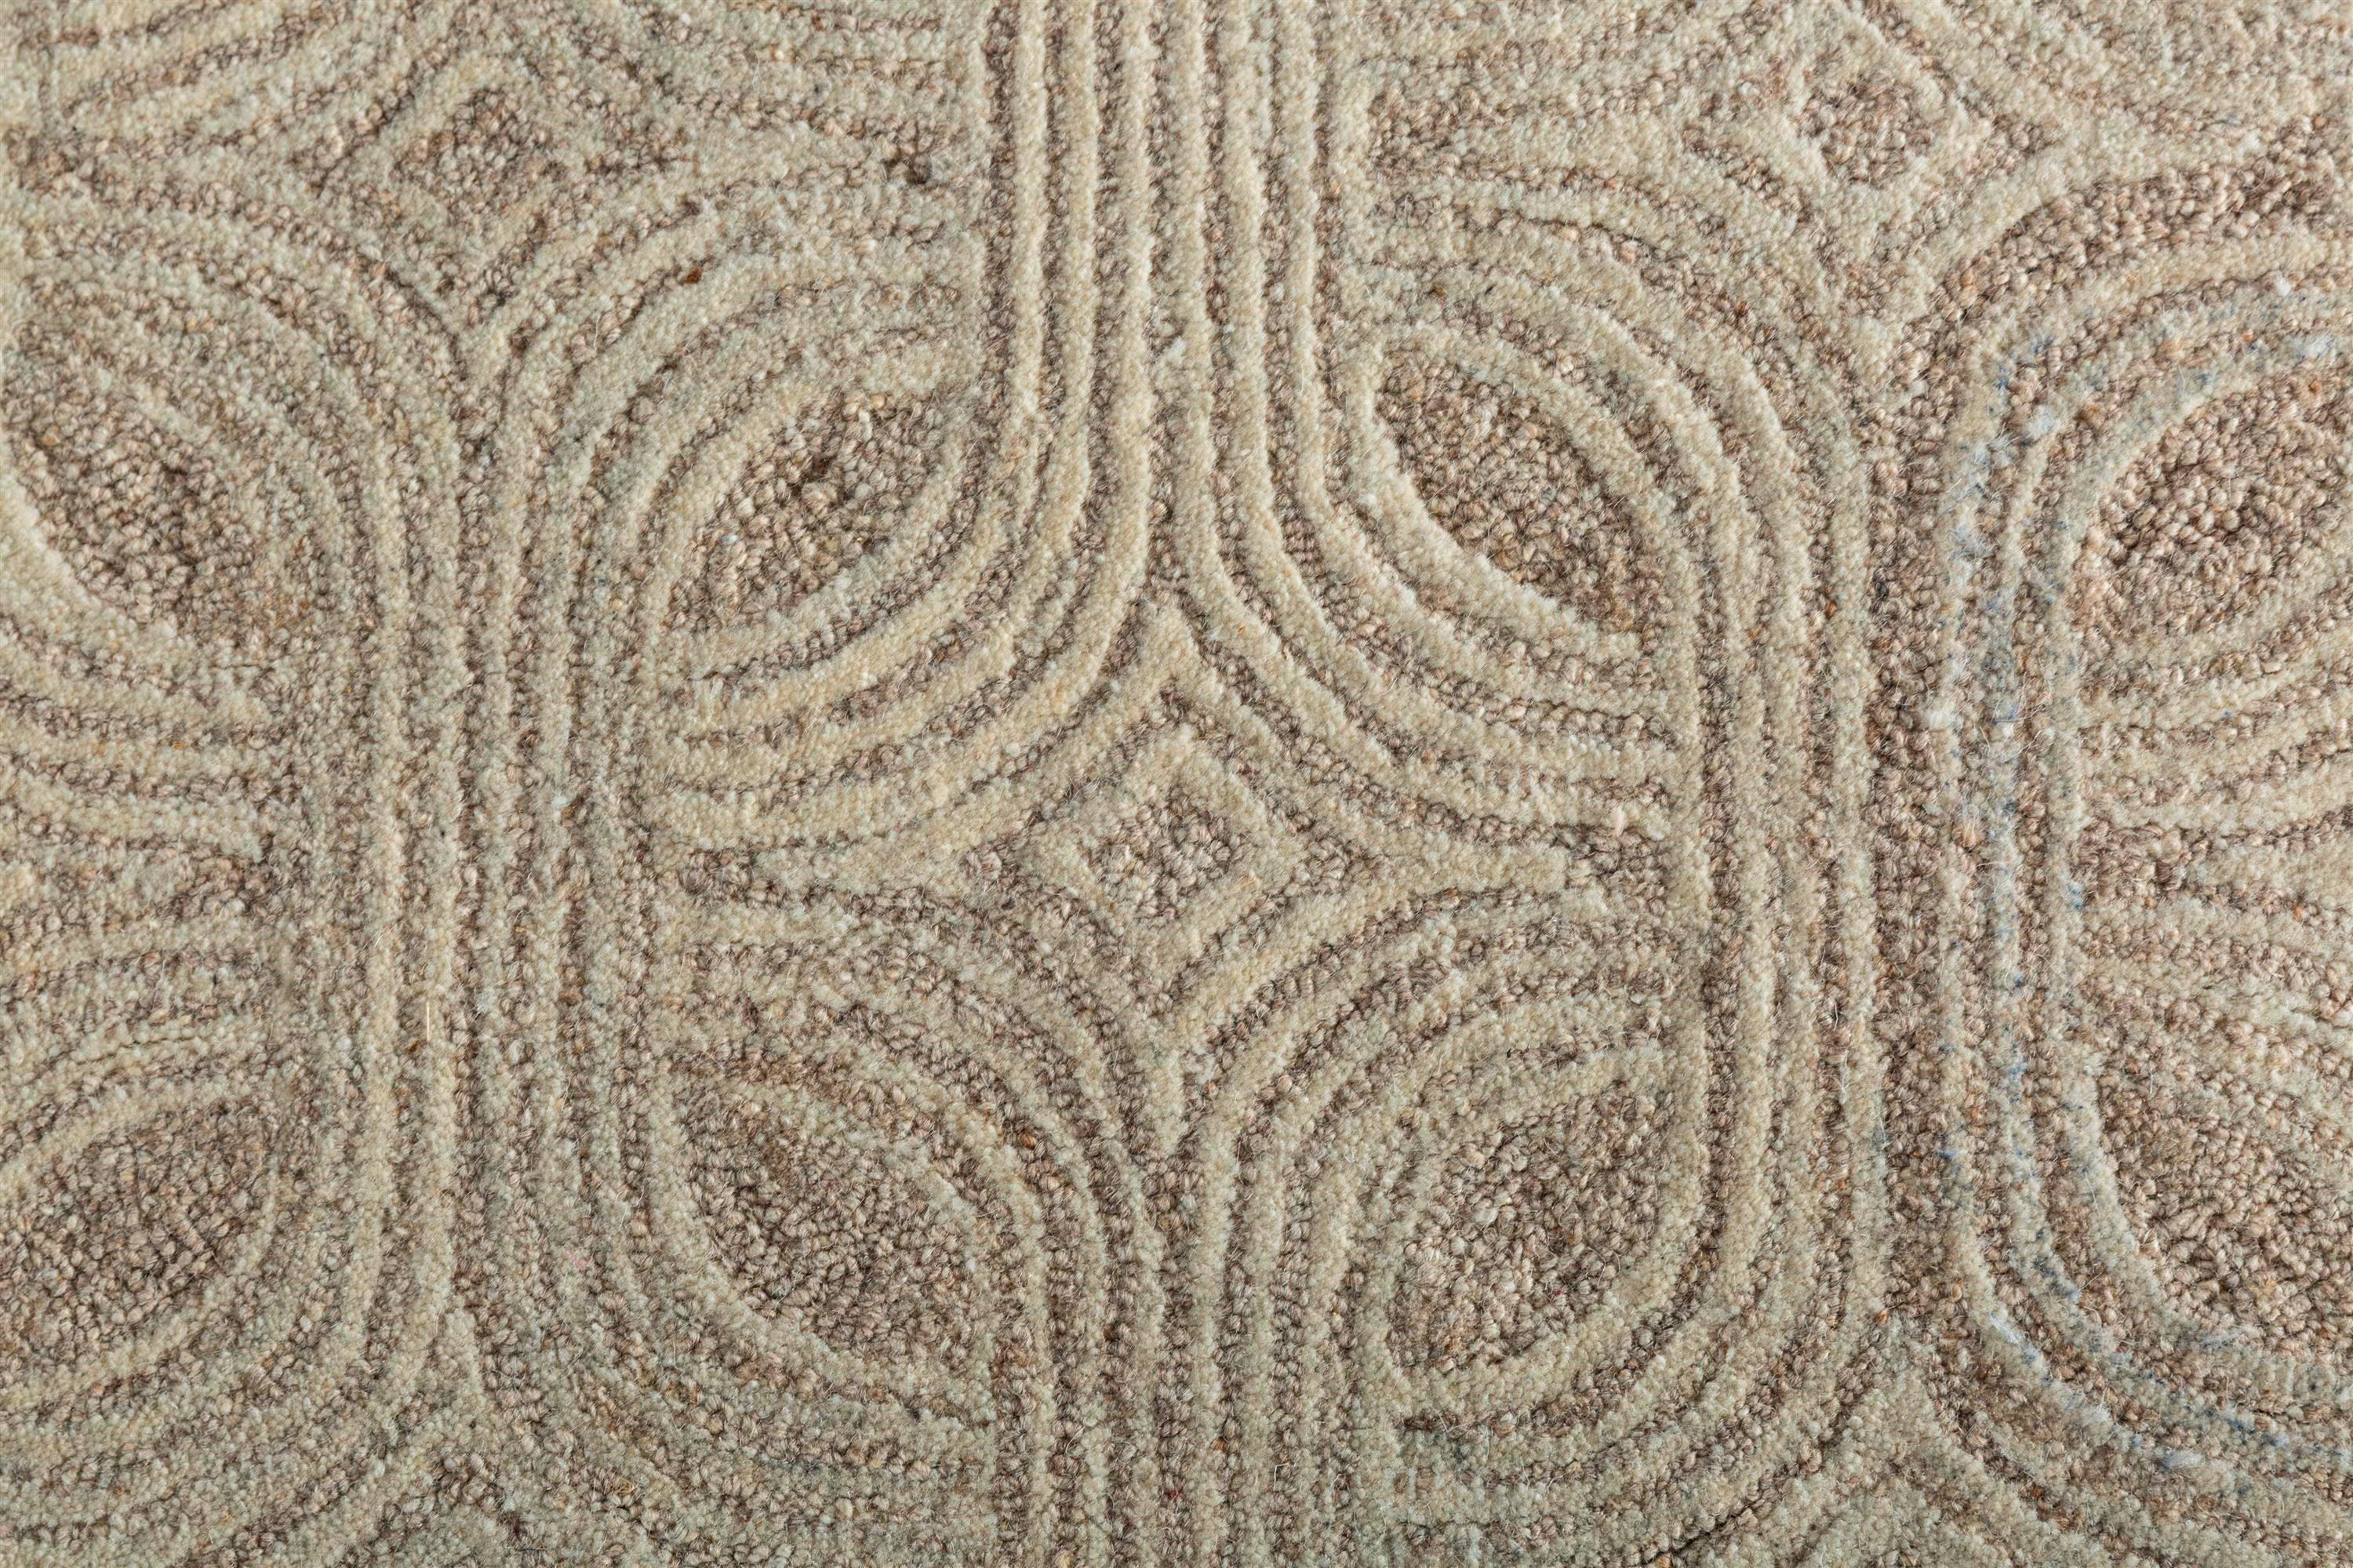 Wir stellen Ihnen unseren modernen, handgetufteten Teppich vor - ein Kunstwerk aus hochwertiger Wolle, dessen Ästhetik durch die Dimensionen und den organischen Charakter geprägt ist. Die  Der schöne Teppich mit seinem vom Art déco inspirierten